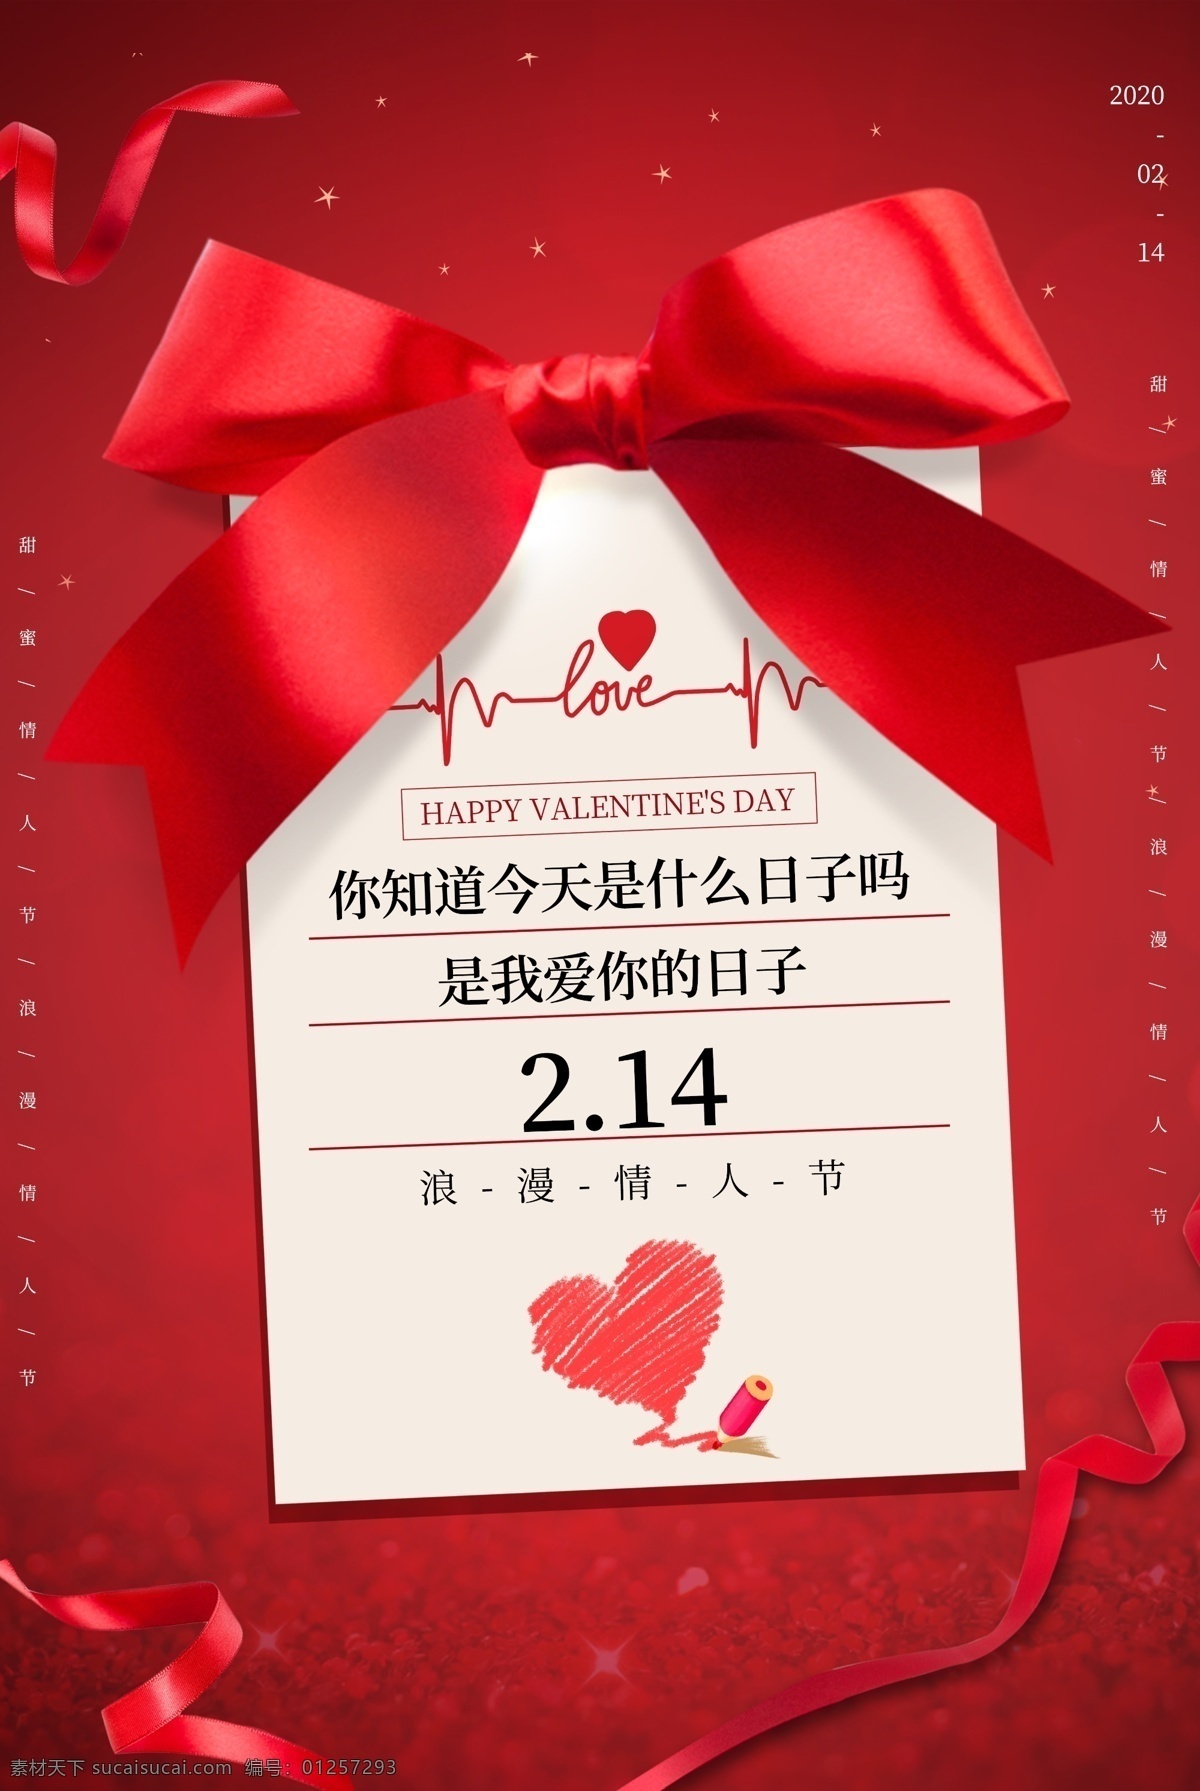 情人节 节日 活动 促销 宣传海报 宣传 海报 传统节日